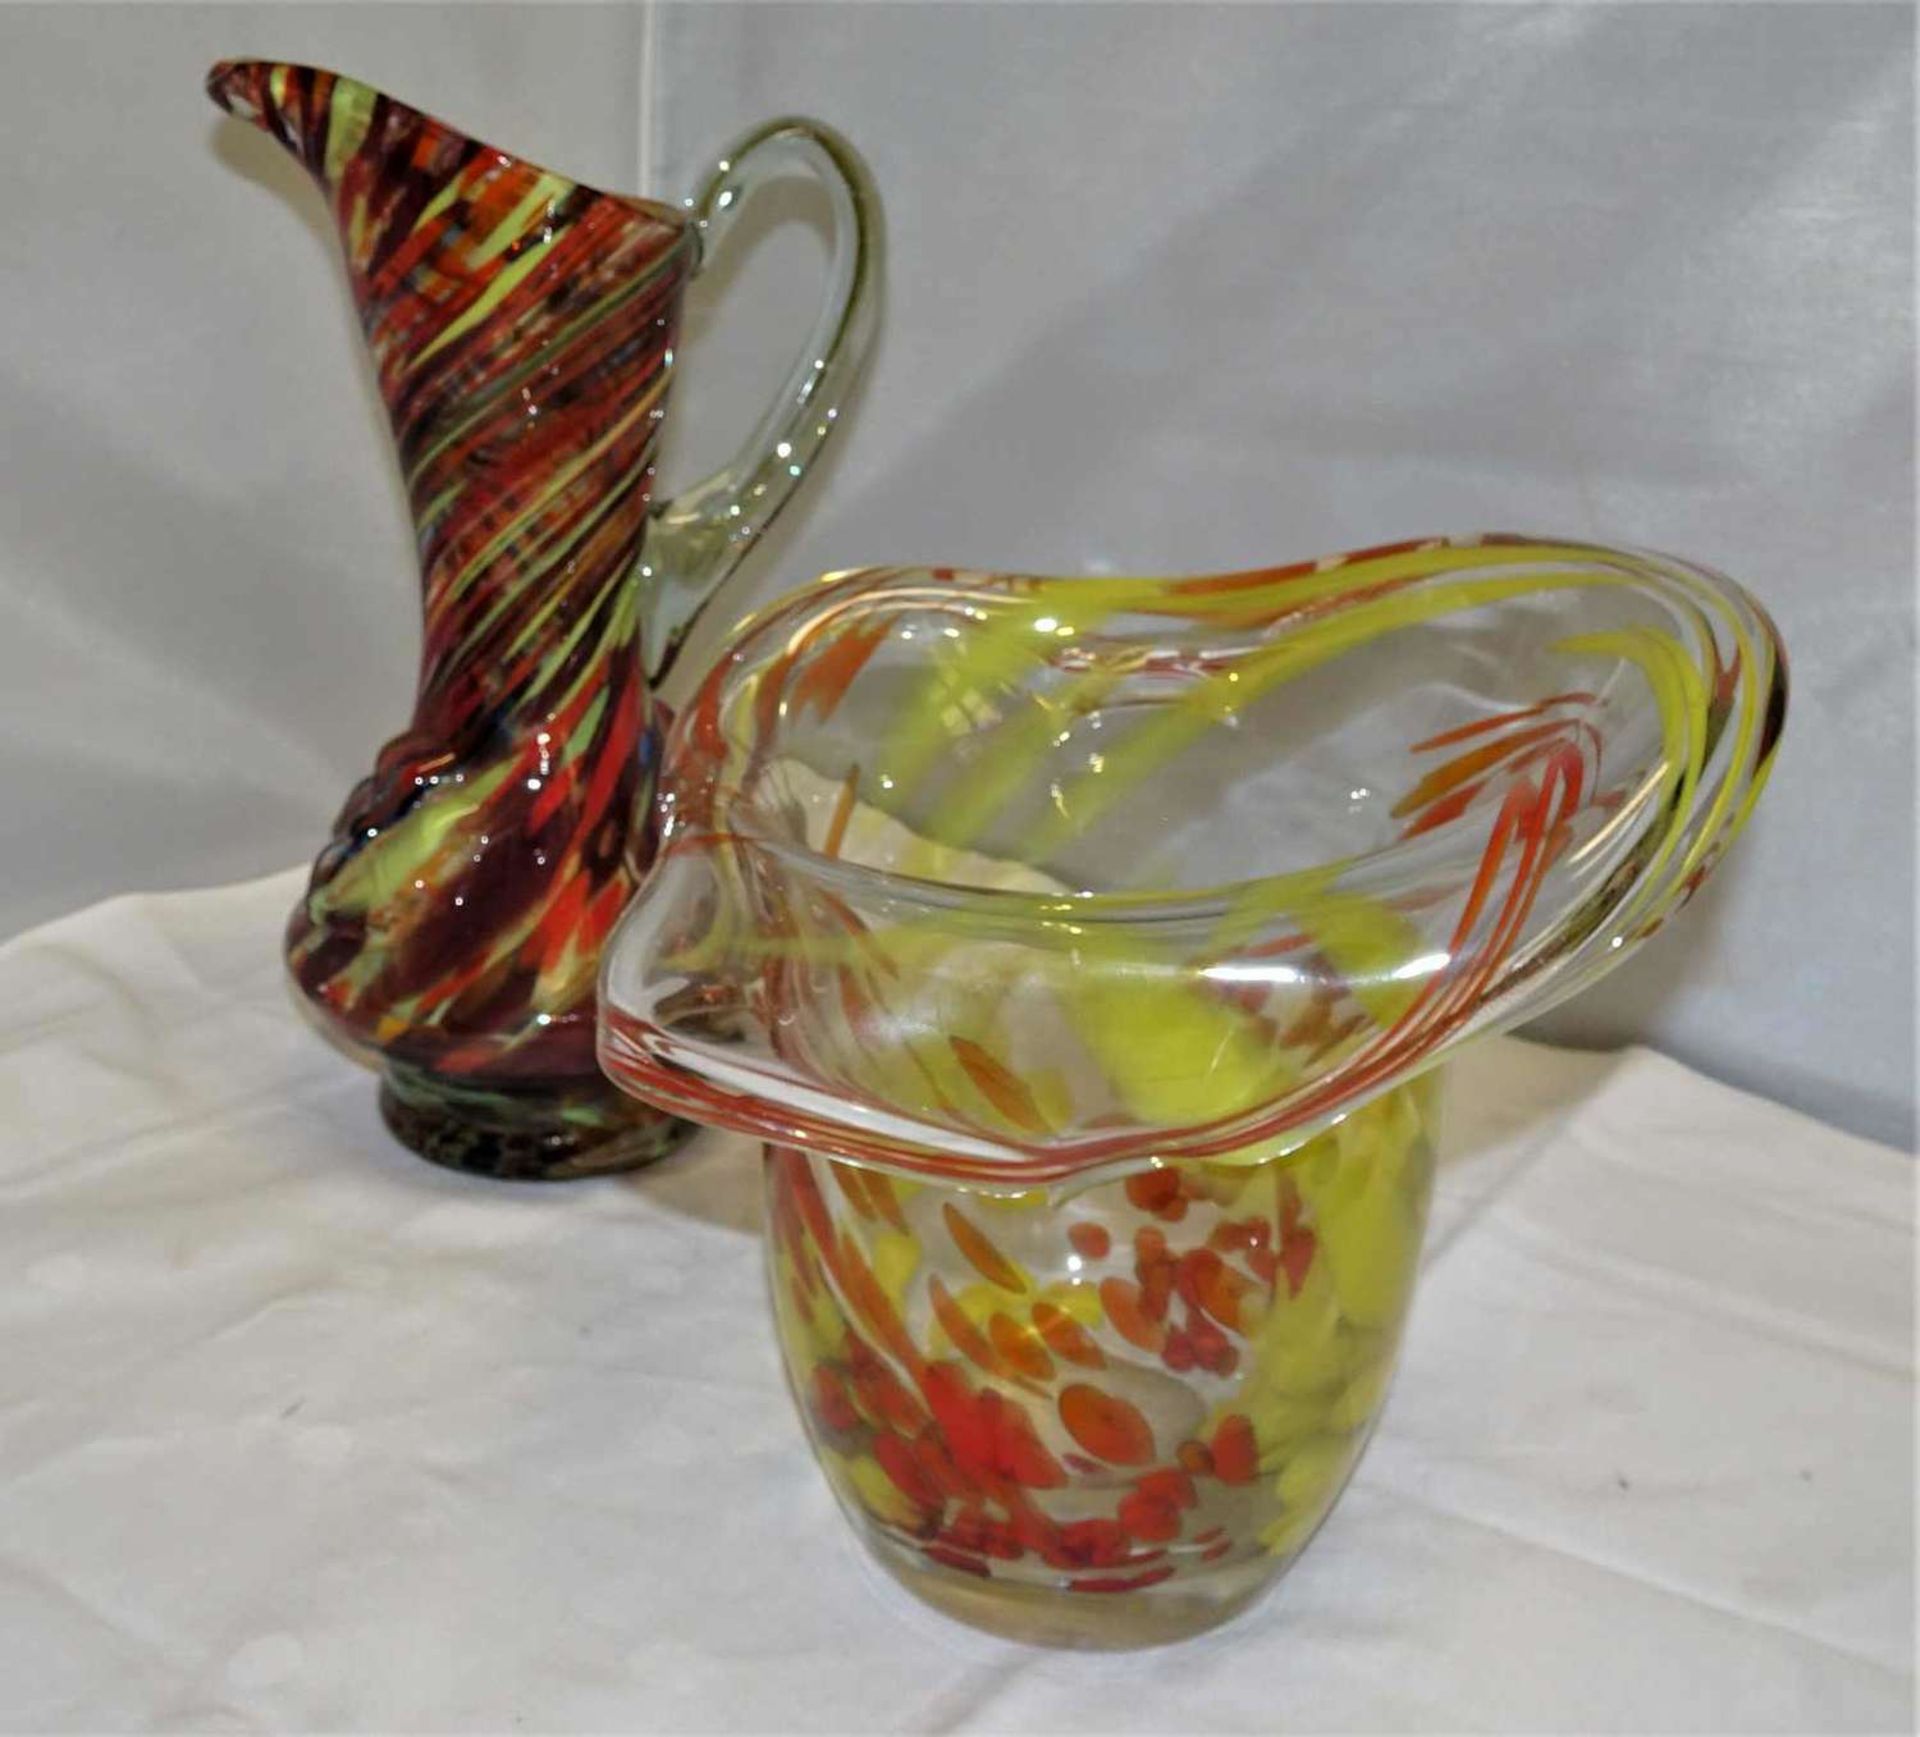 2Teile Murano Glas, 1x Henkelvase, sowie 1 Taschentuchvase. Beide mit orange/gelben Einschmelzungen.